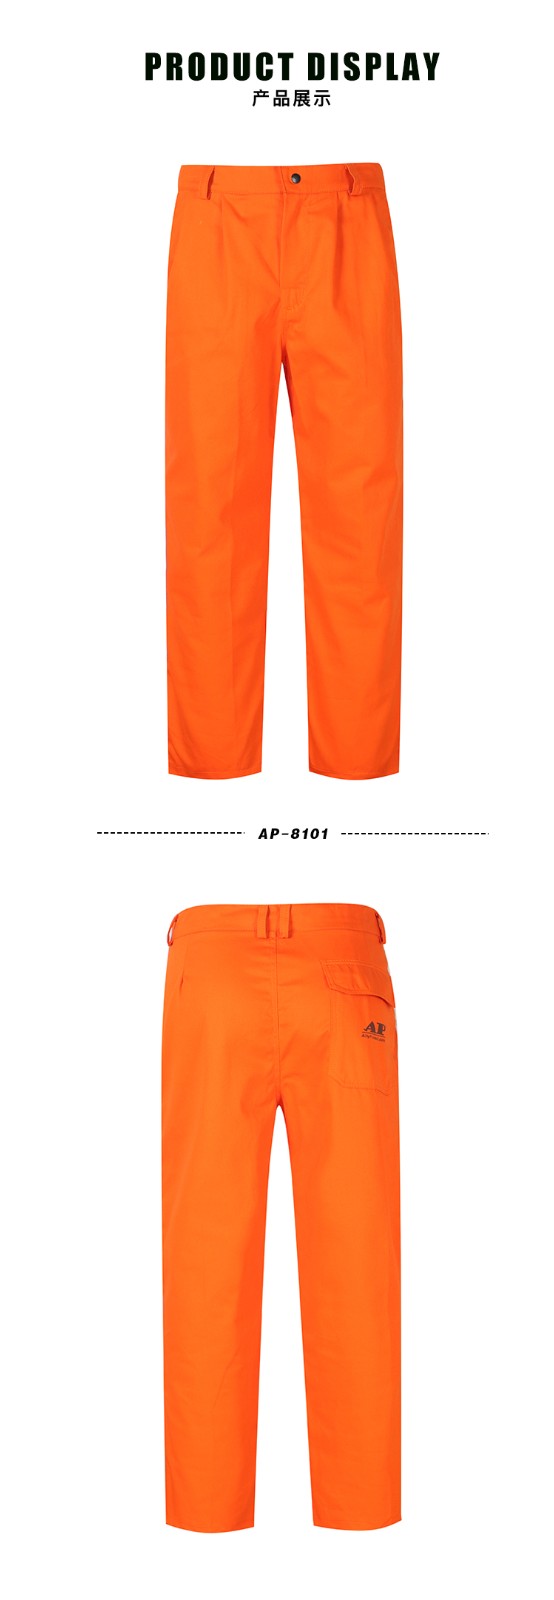 友盟AP-8101橙红色防火阻燃工作裤-L